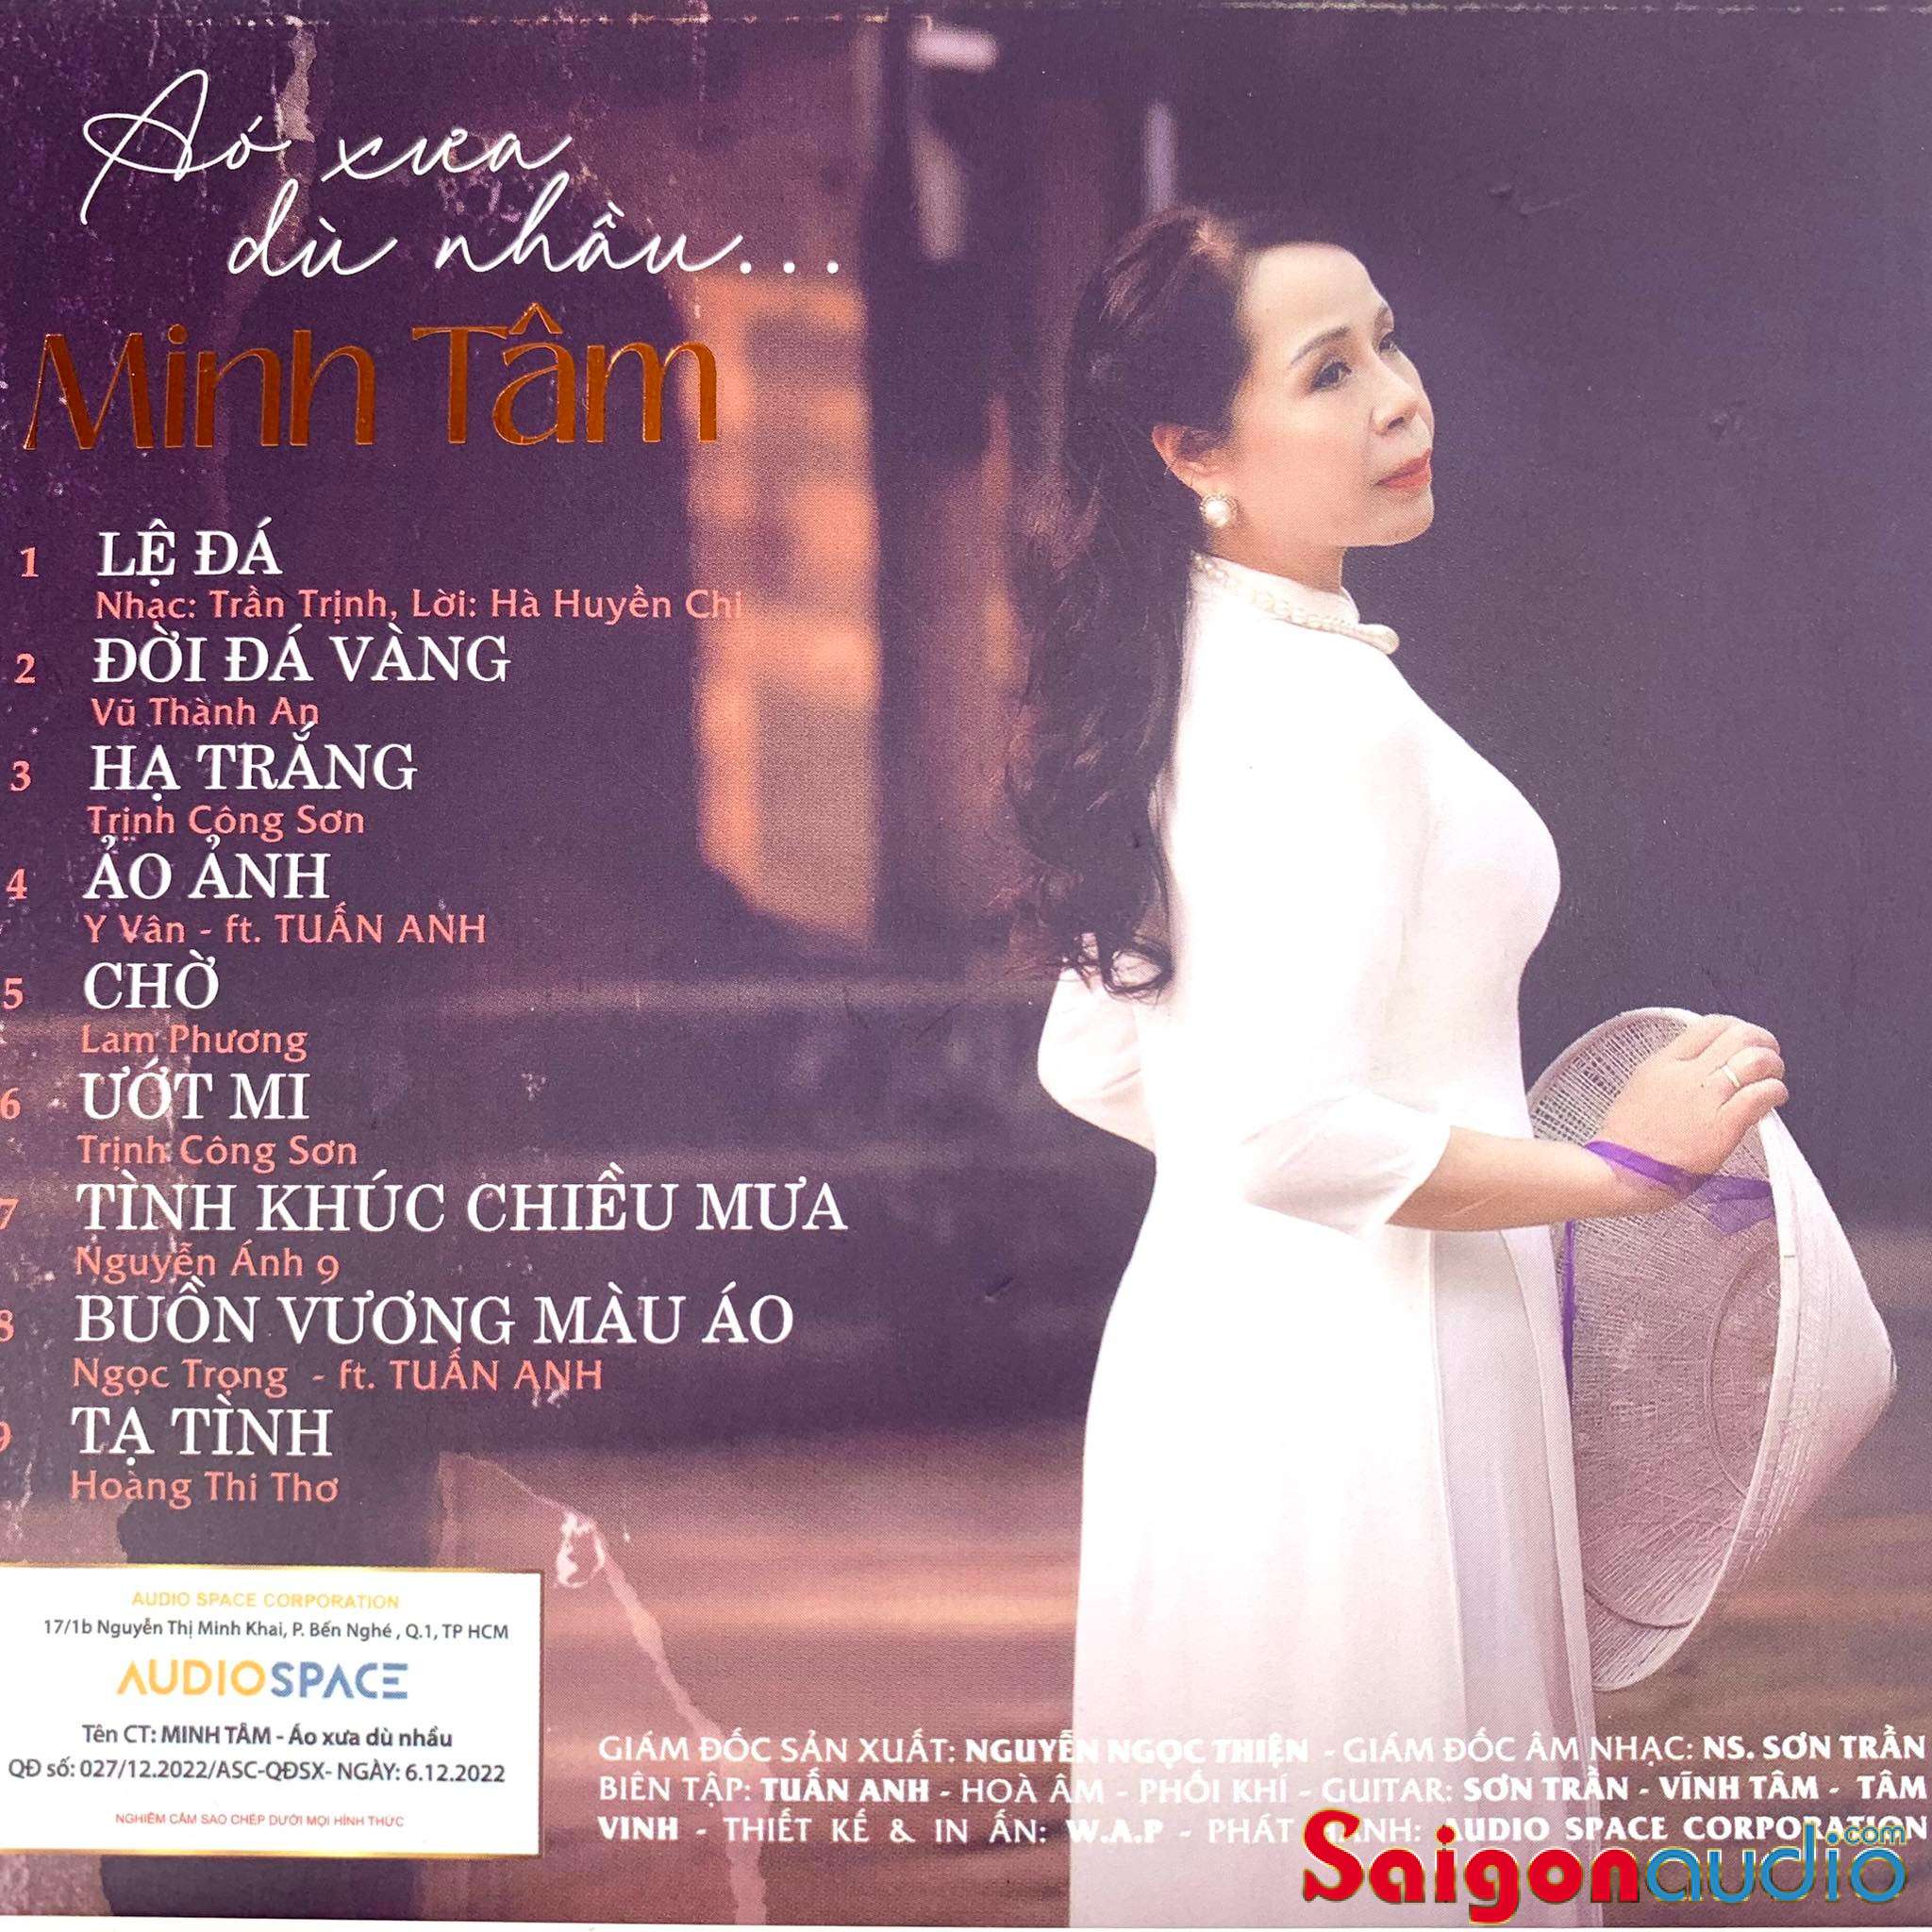 Đĩa CD nhạc gốc Minh Tâm - Áo Xưa Dù Nhàu (Free ship khi mua 2 đĩa CD cùng hoặc khác loại)